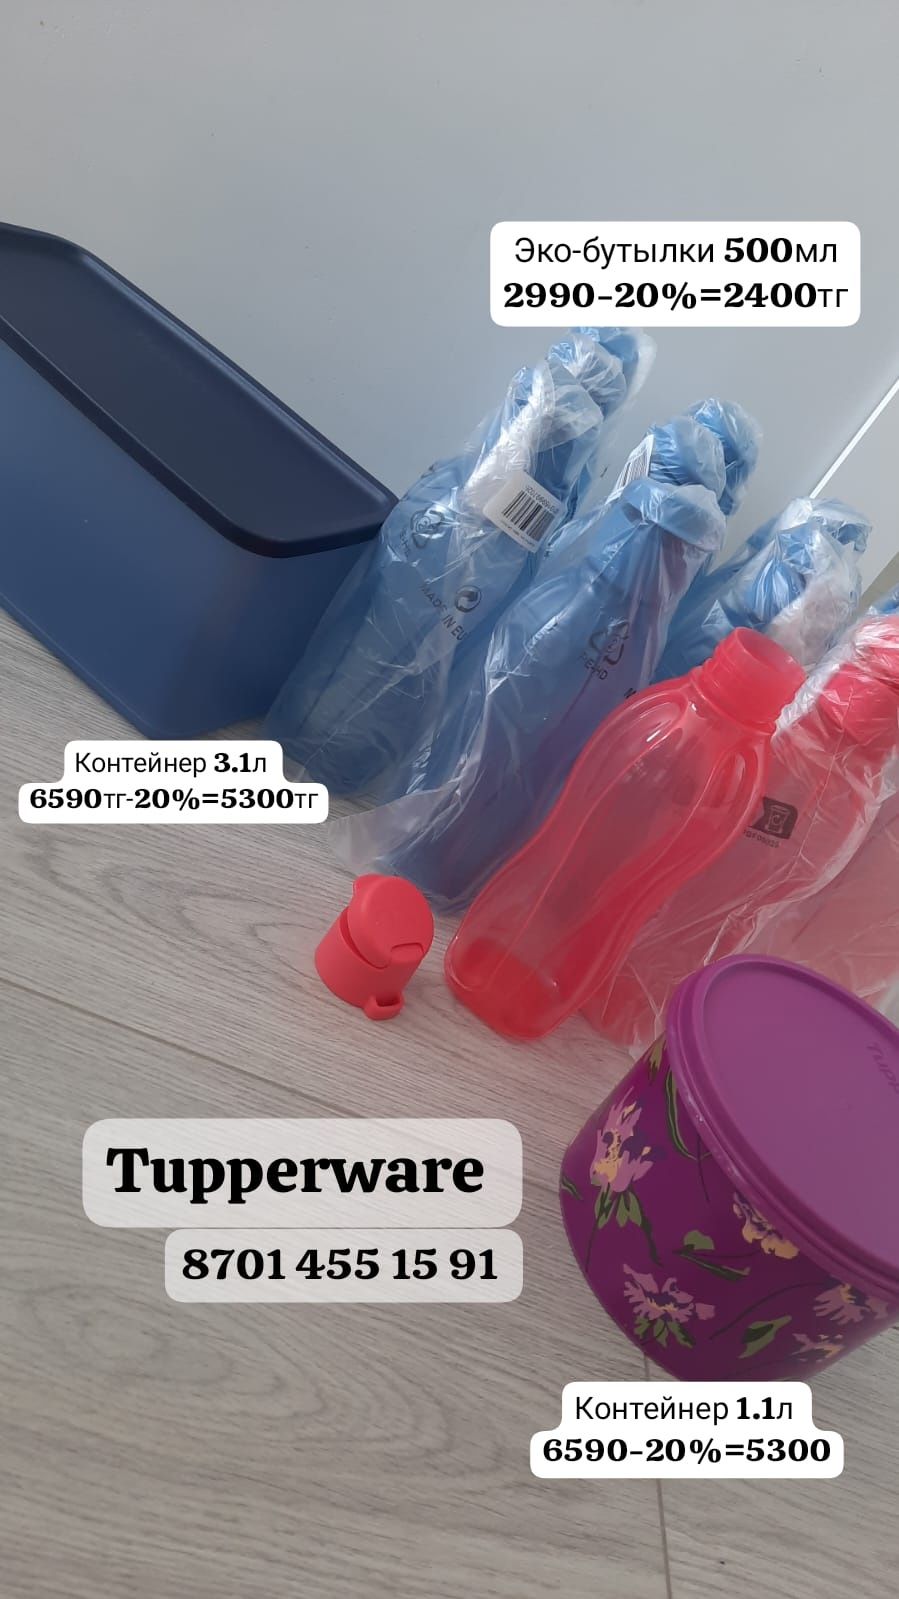 Бутылки и контейнеры от Tupperware